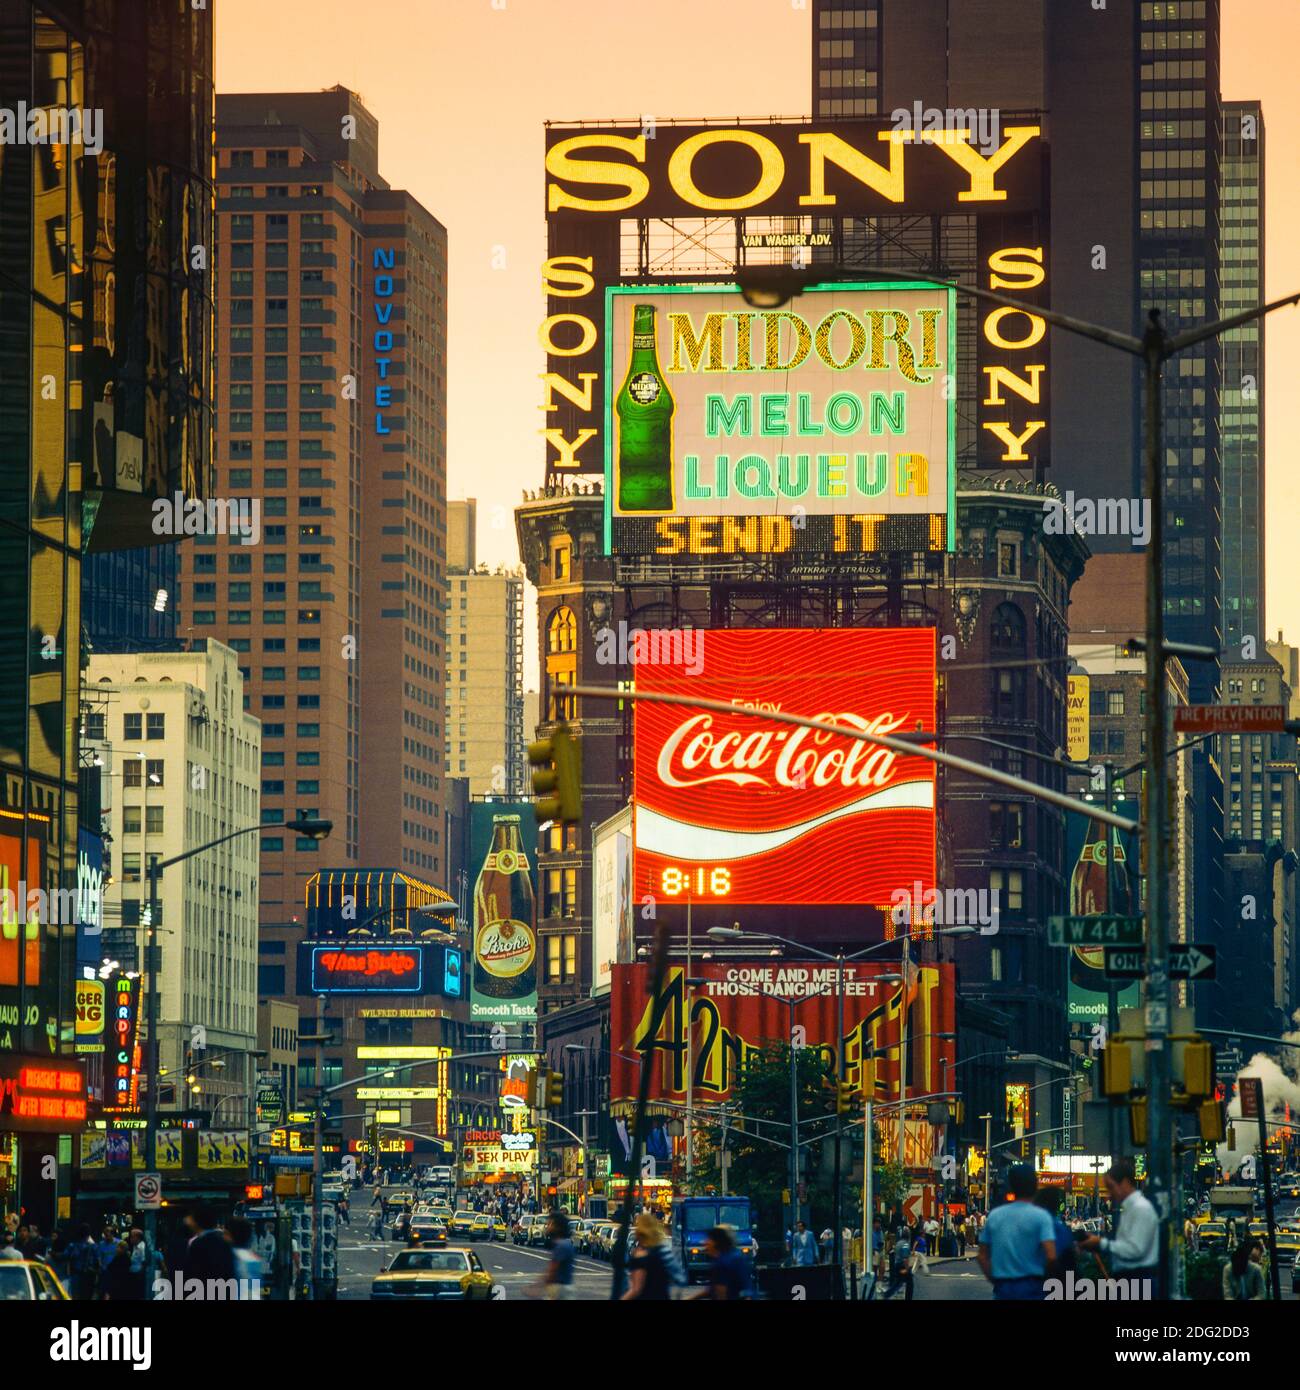 New York 1985, Times Square al crepuscolo, insegne pubblicitarie illuminate, automobili, persone, Midtown Manhattan, New York City, NY, New York, USA, Foto Stock